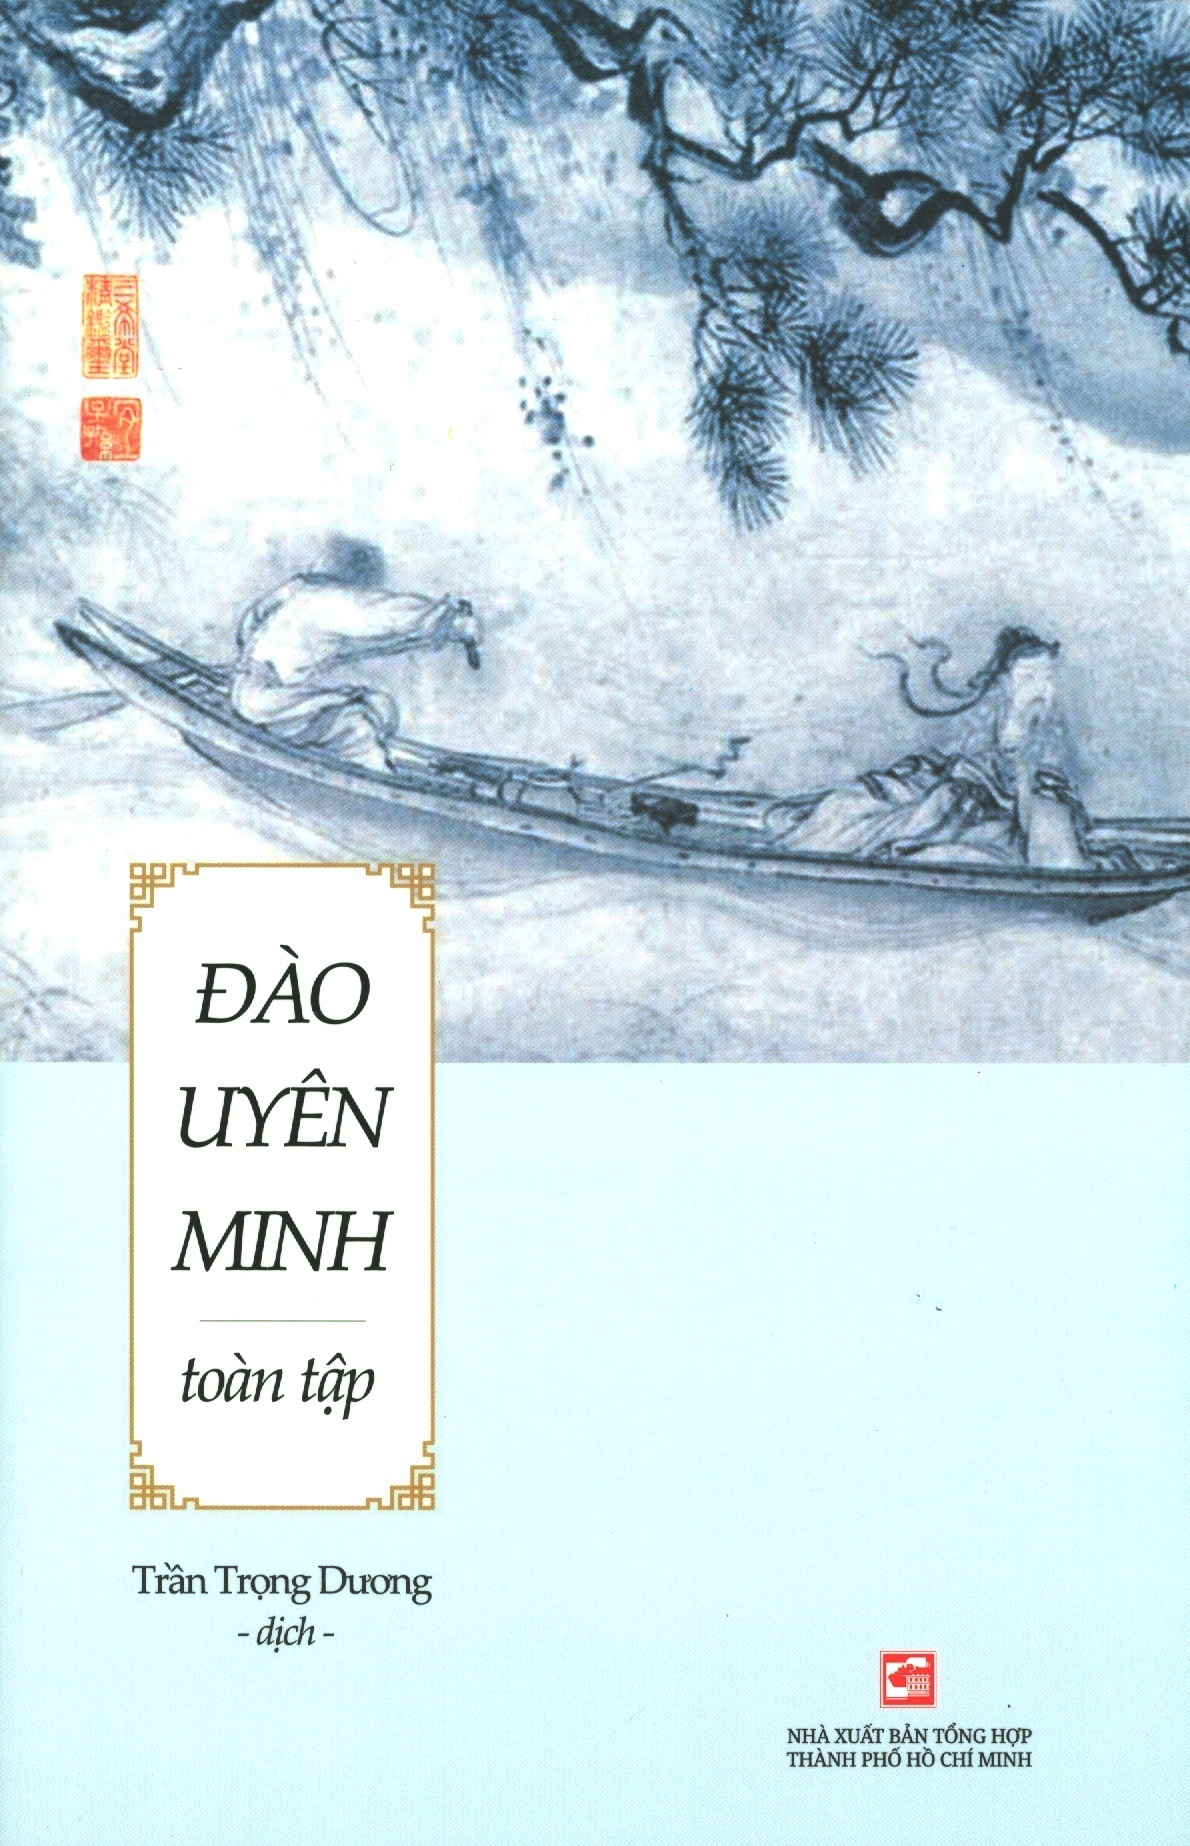 Tiến sỹ Trần Trọng Dương đã mất 15 năm để khảo cứu, dịch thuật, chú thích và… tìm cách xuất bản cuốn sách.